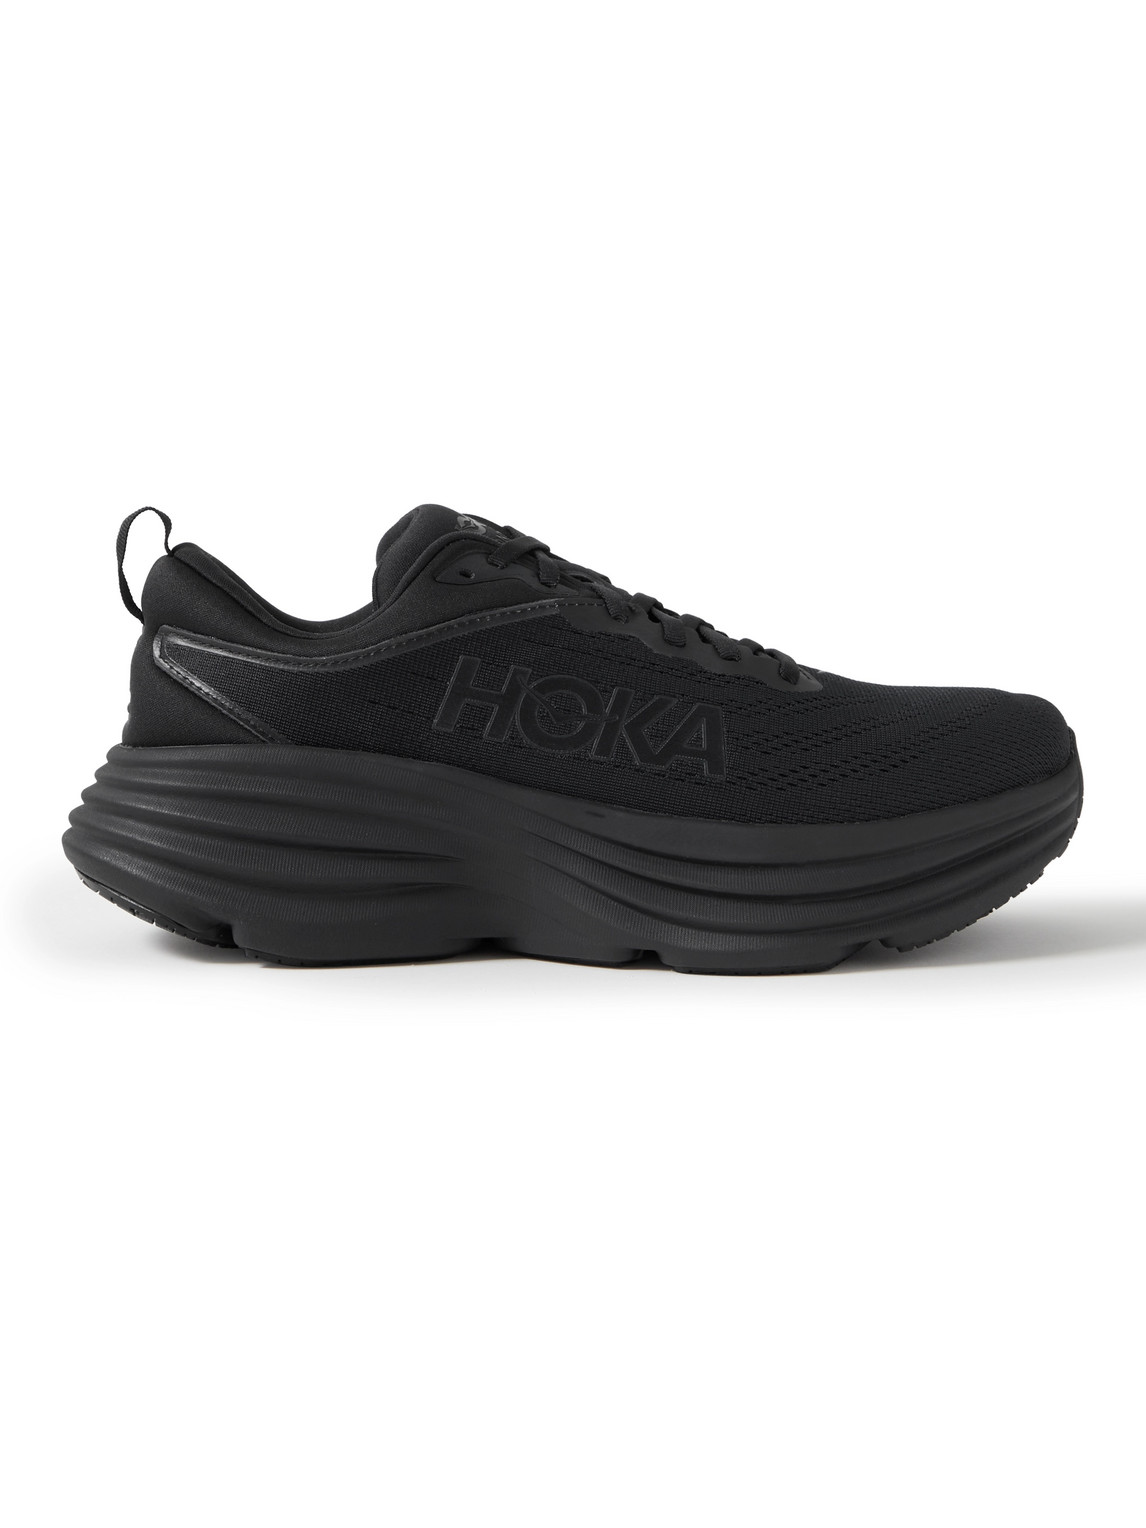 Hoka One One Bondi 8 Running Sneakers In Black